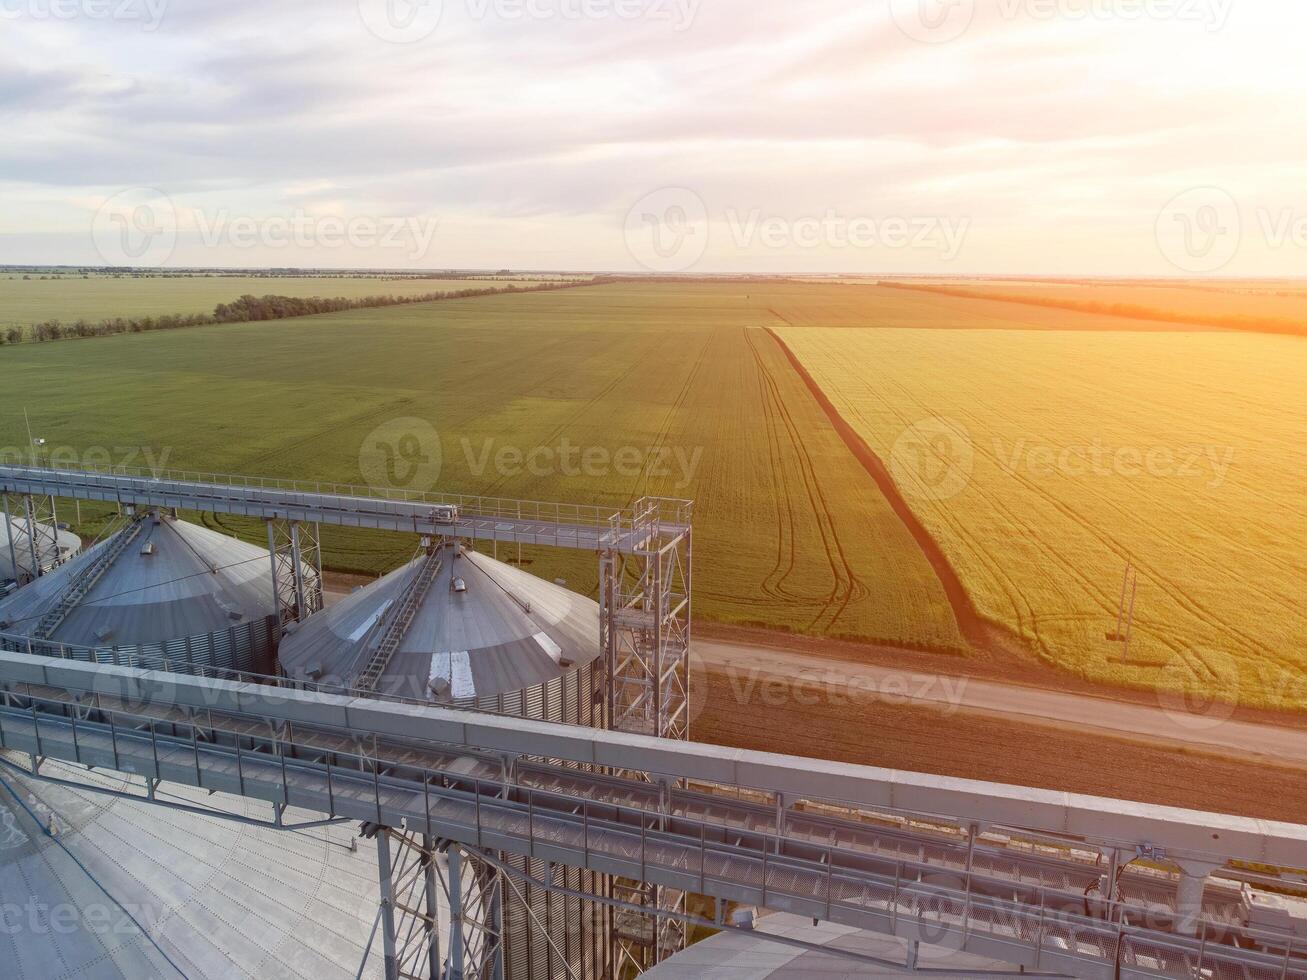 modern metaal silo's Aan agro-verwerking en fabricage fabriek. antenne visie van graanschuur lift verwerken drogen schoonmaak en opslagruimte van agrarisch producten, meel, granen en korrel. niemand. foto